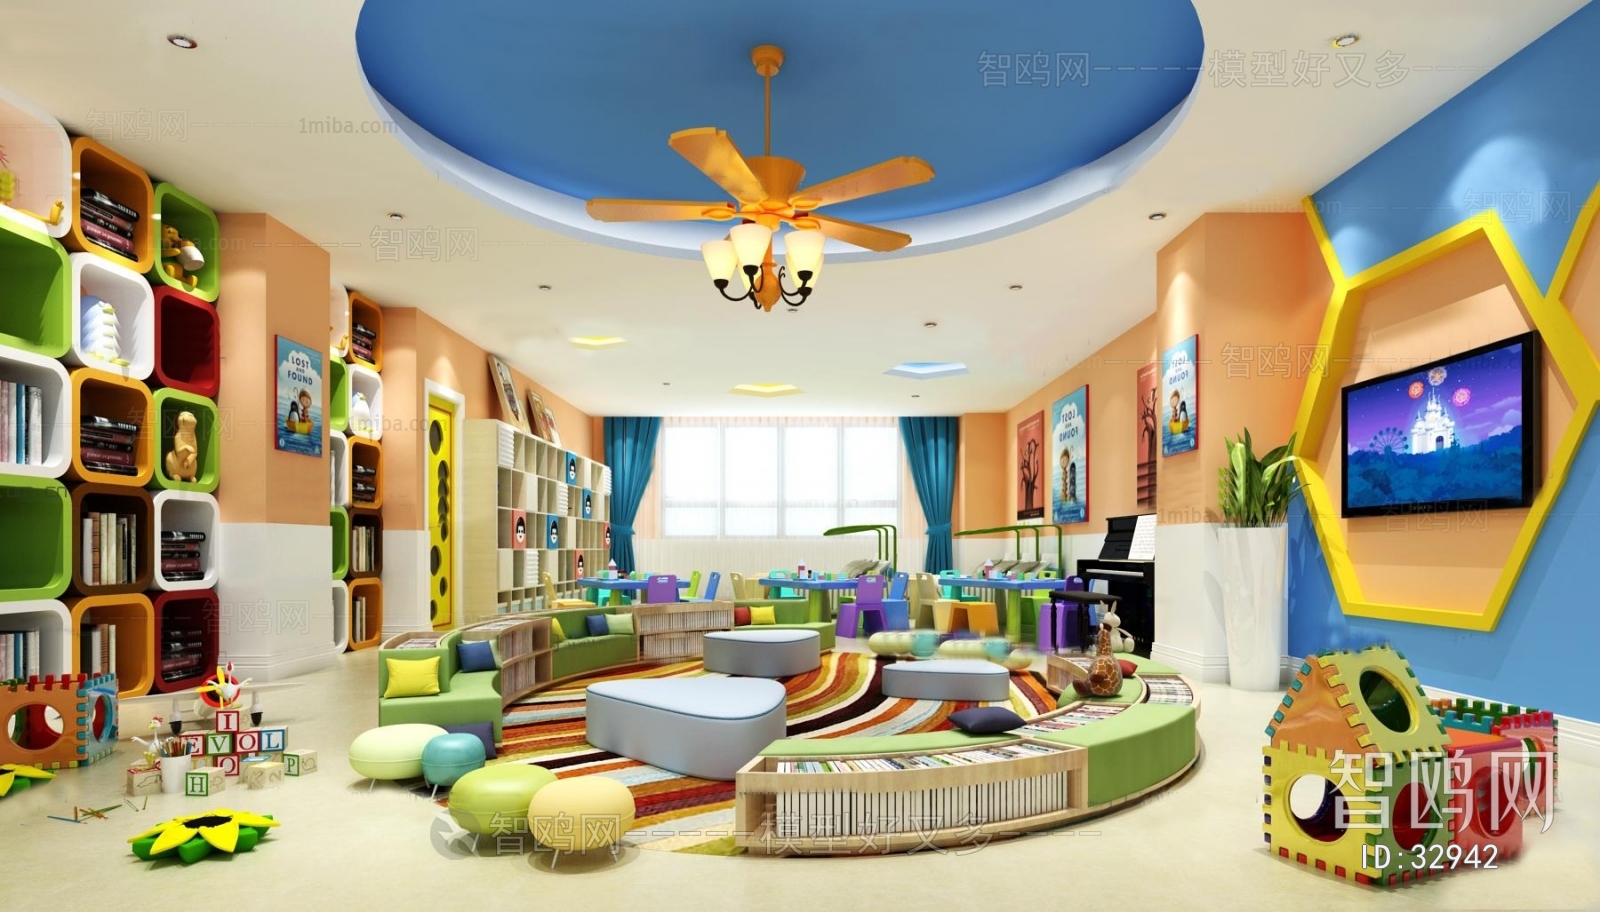 现代儿童幼儿园阅览室